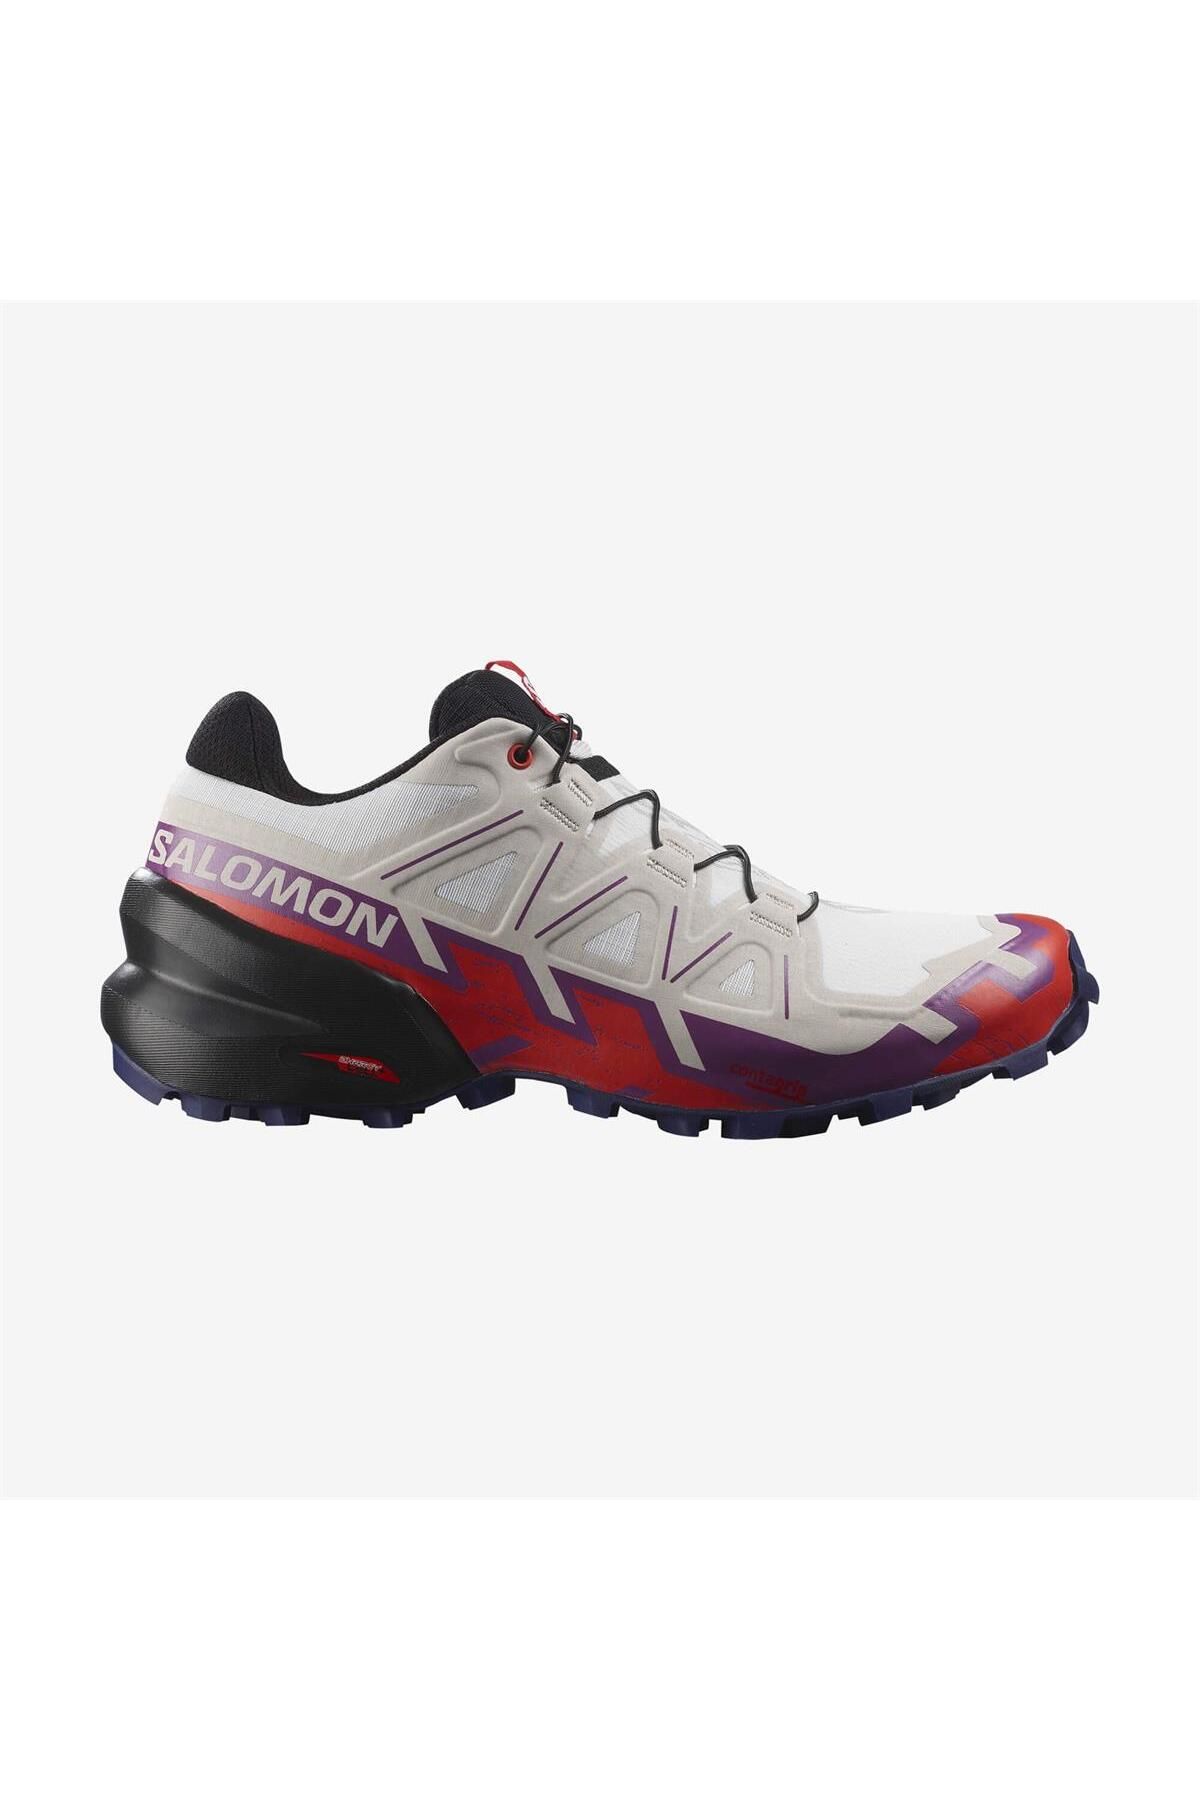 Salomon Speedcross 6 Kadın Koşu Ayakkabısı L41743200